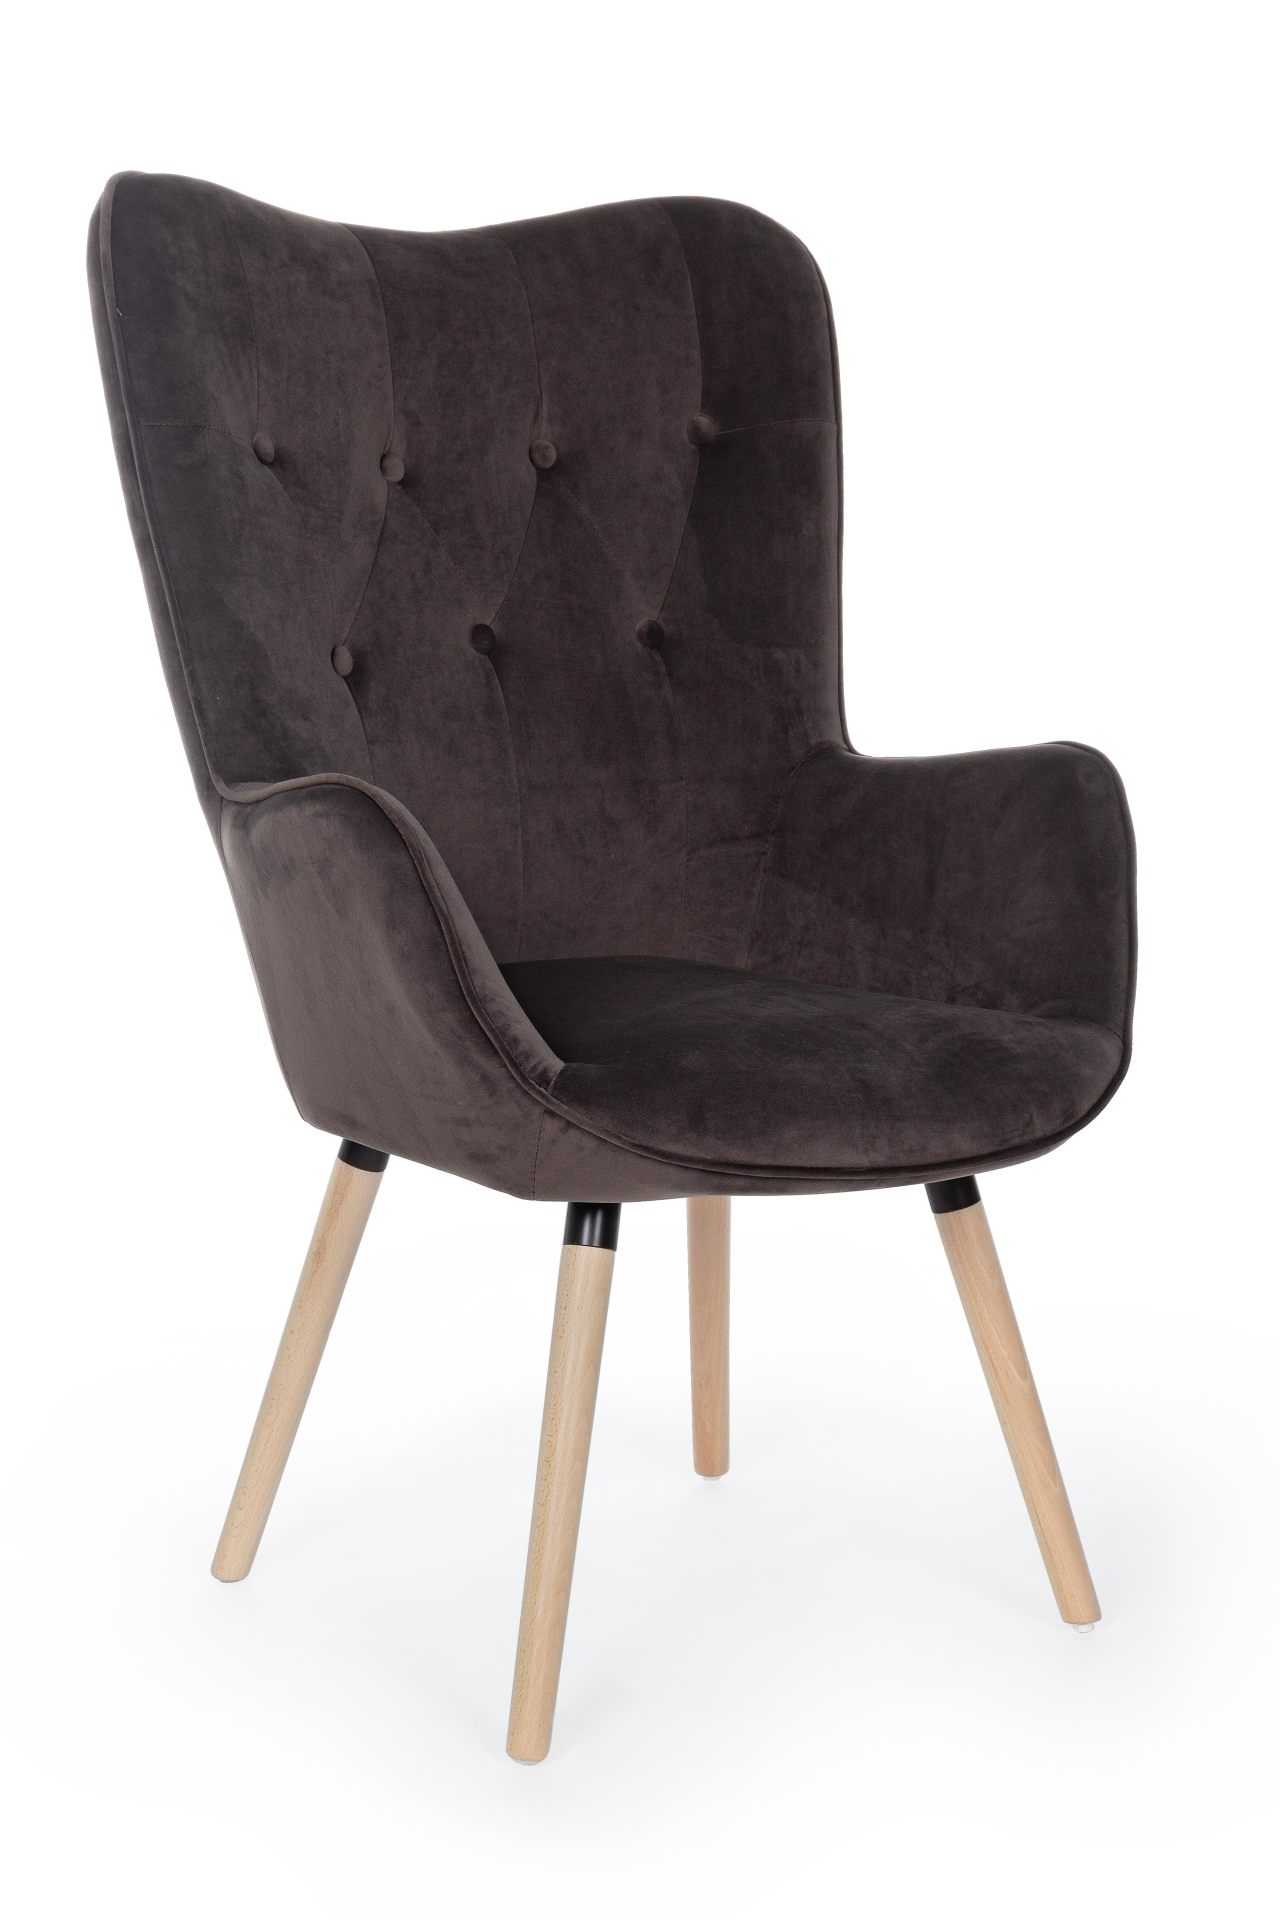 Der Sessel Juliet überzeugt mit seinem modernen Design. Gefertigt wurde er aus Stoff in Samt-Optik, welcher einen braunen Farbton besitzt. Das Gestell ist aus Buchenholz und hat eine natürliche Farbe. Der Sessel besitzt eine Sitzhöhe von 48 cm. Die Breite